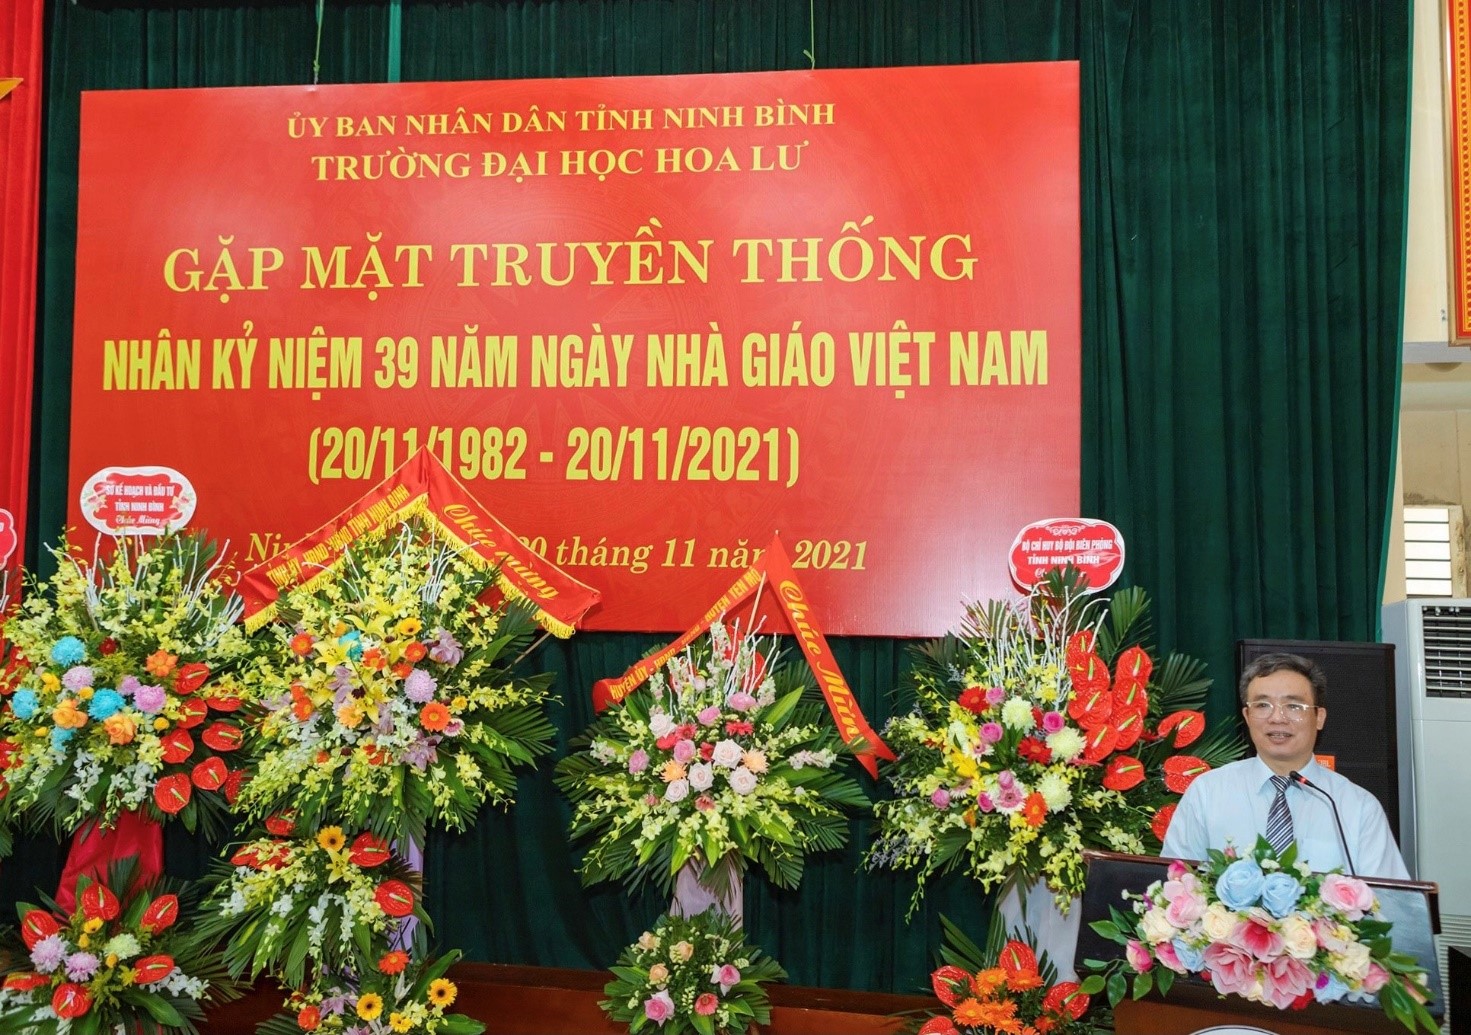 Gặp mặt truyền thống nhân kỷ niệm 39 năm ngày Nhà giáo Việt Nam (20/11/1982 - 20/11/2021)